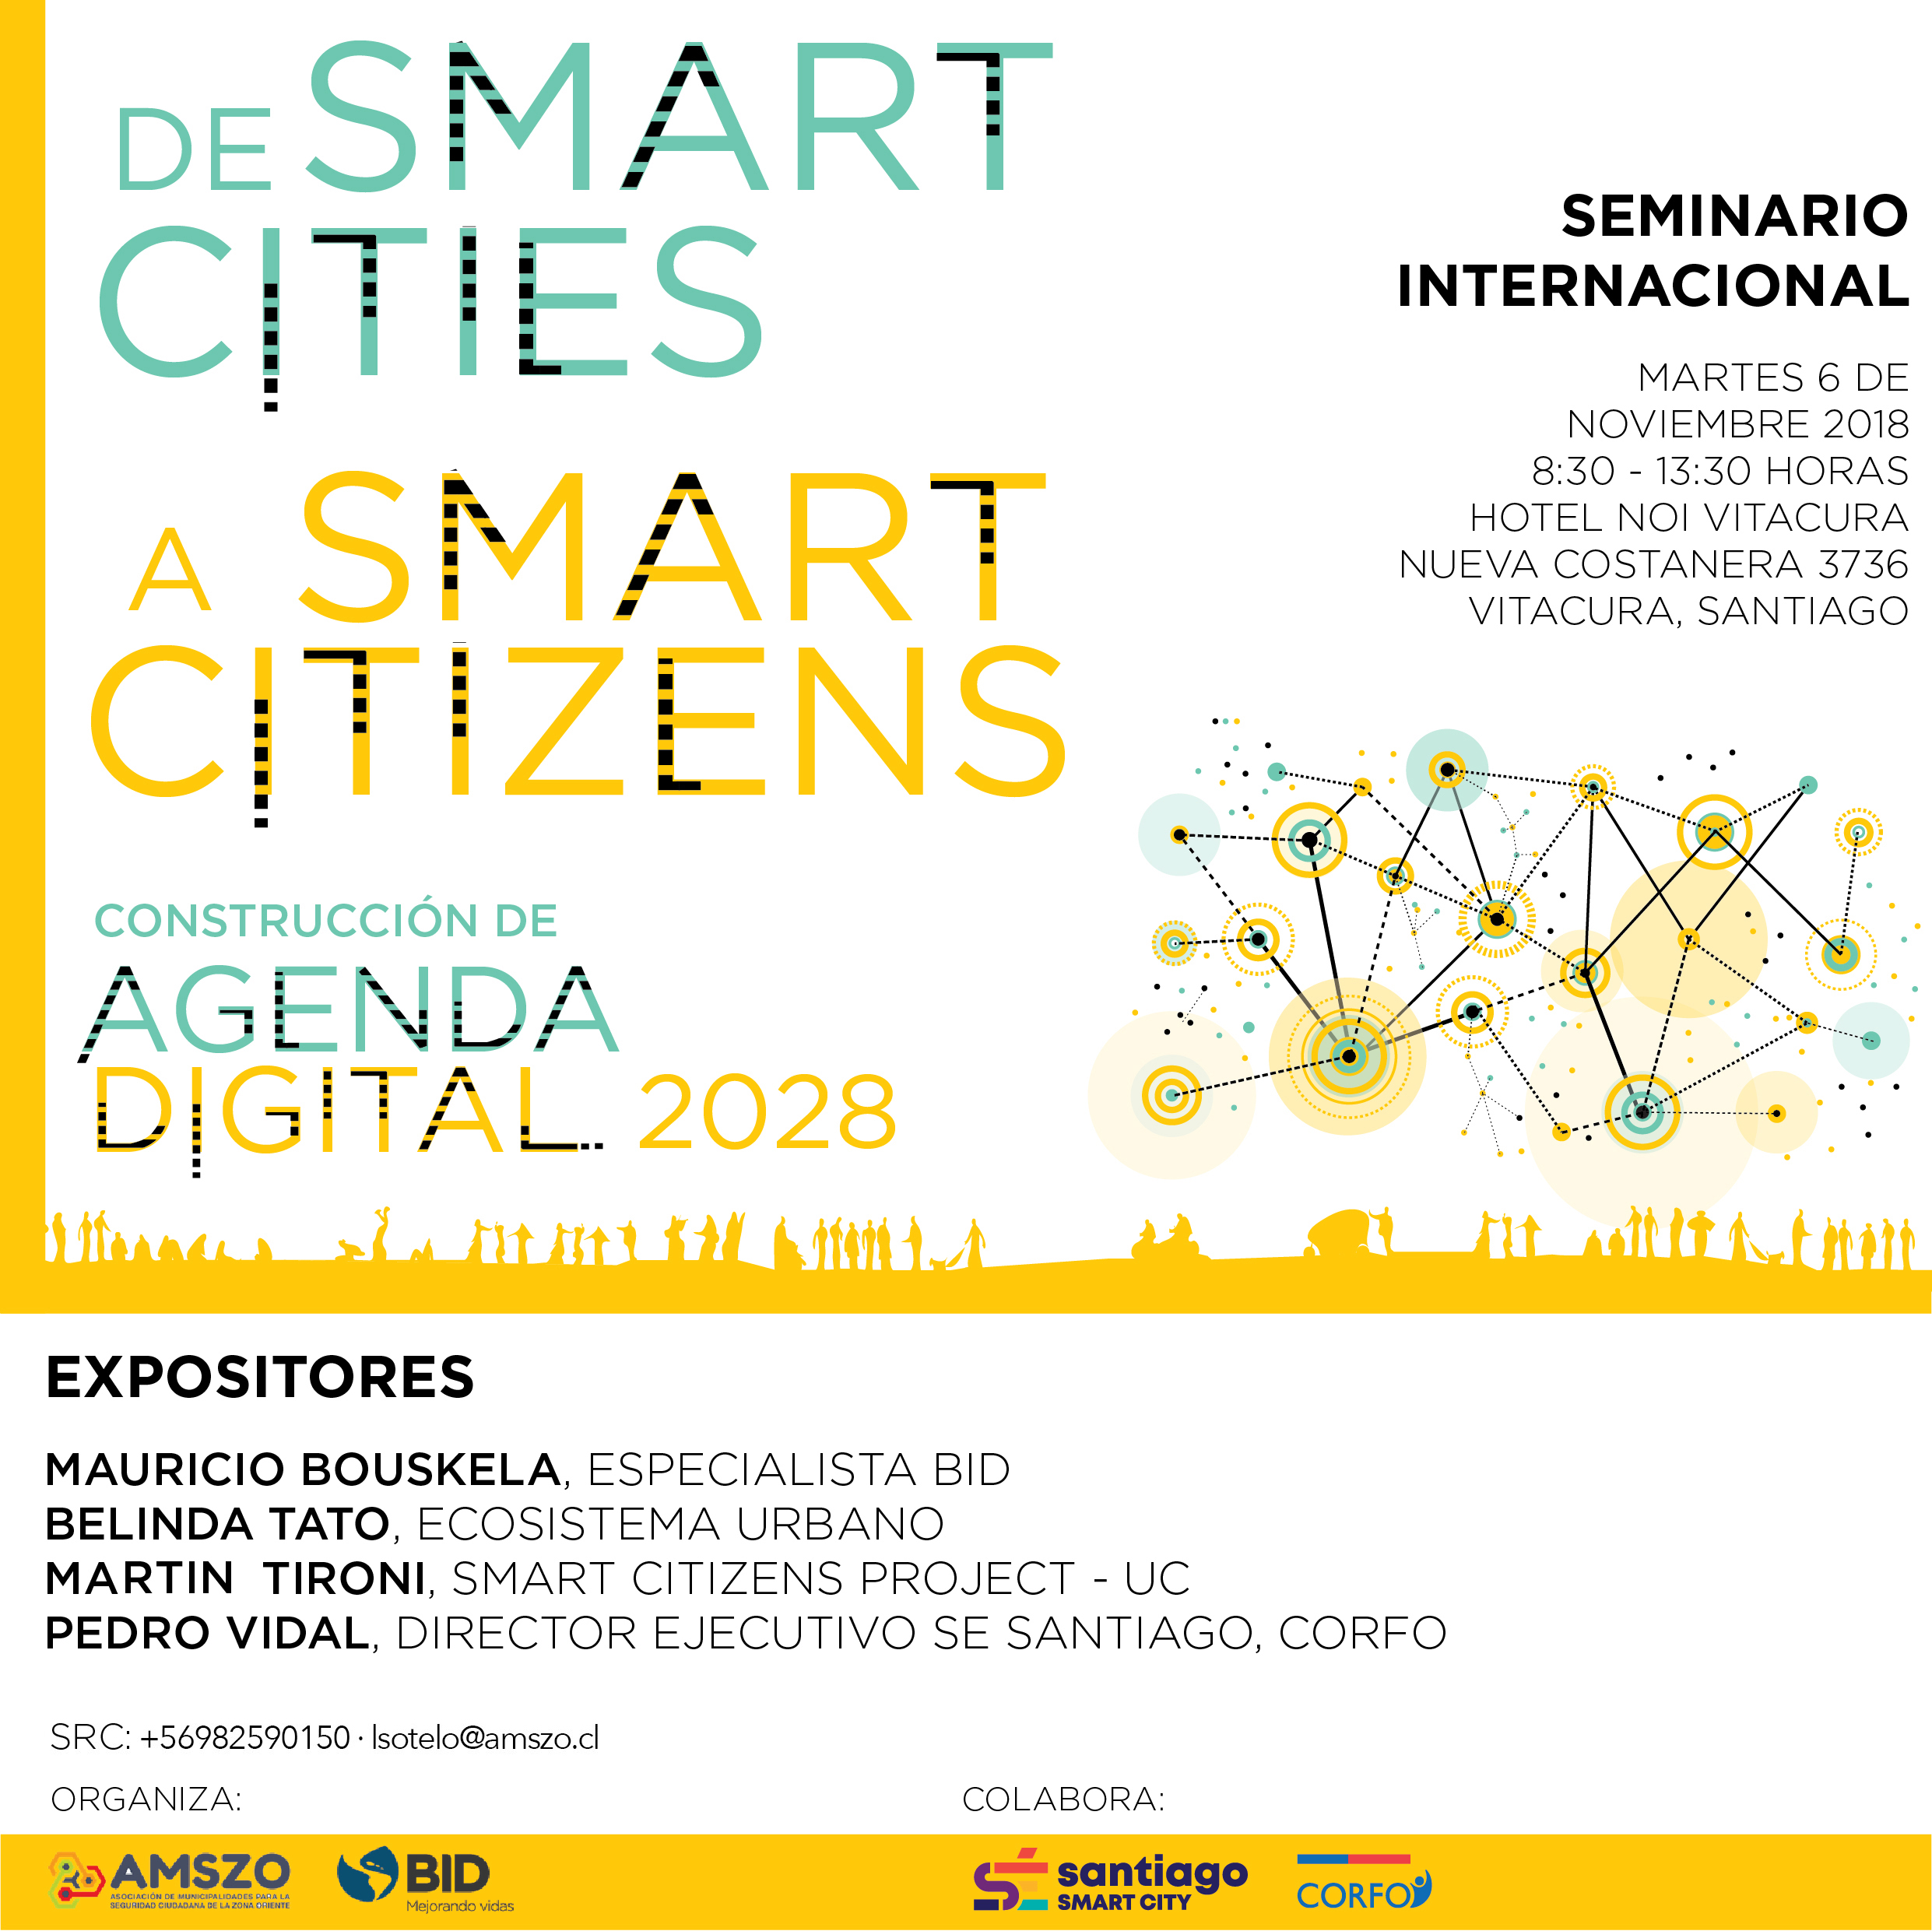 18-11-06_seminario_internacional_De_Smart_Cities_a_Smart_Citizens._Construccion_de_Agenda_Digital_2028_afiche.jpg